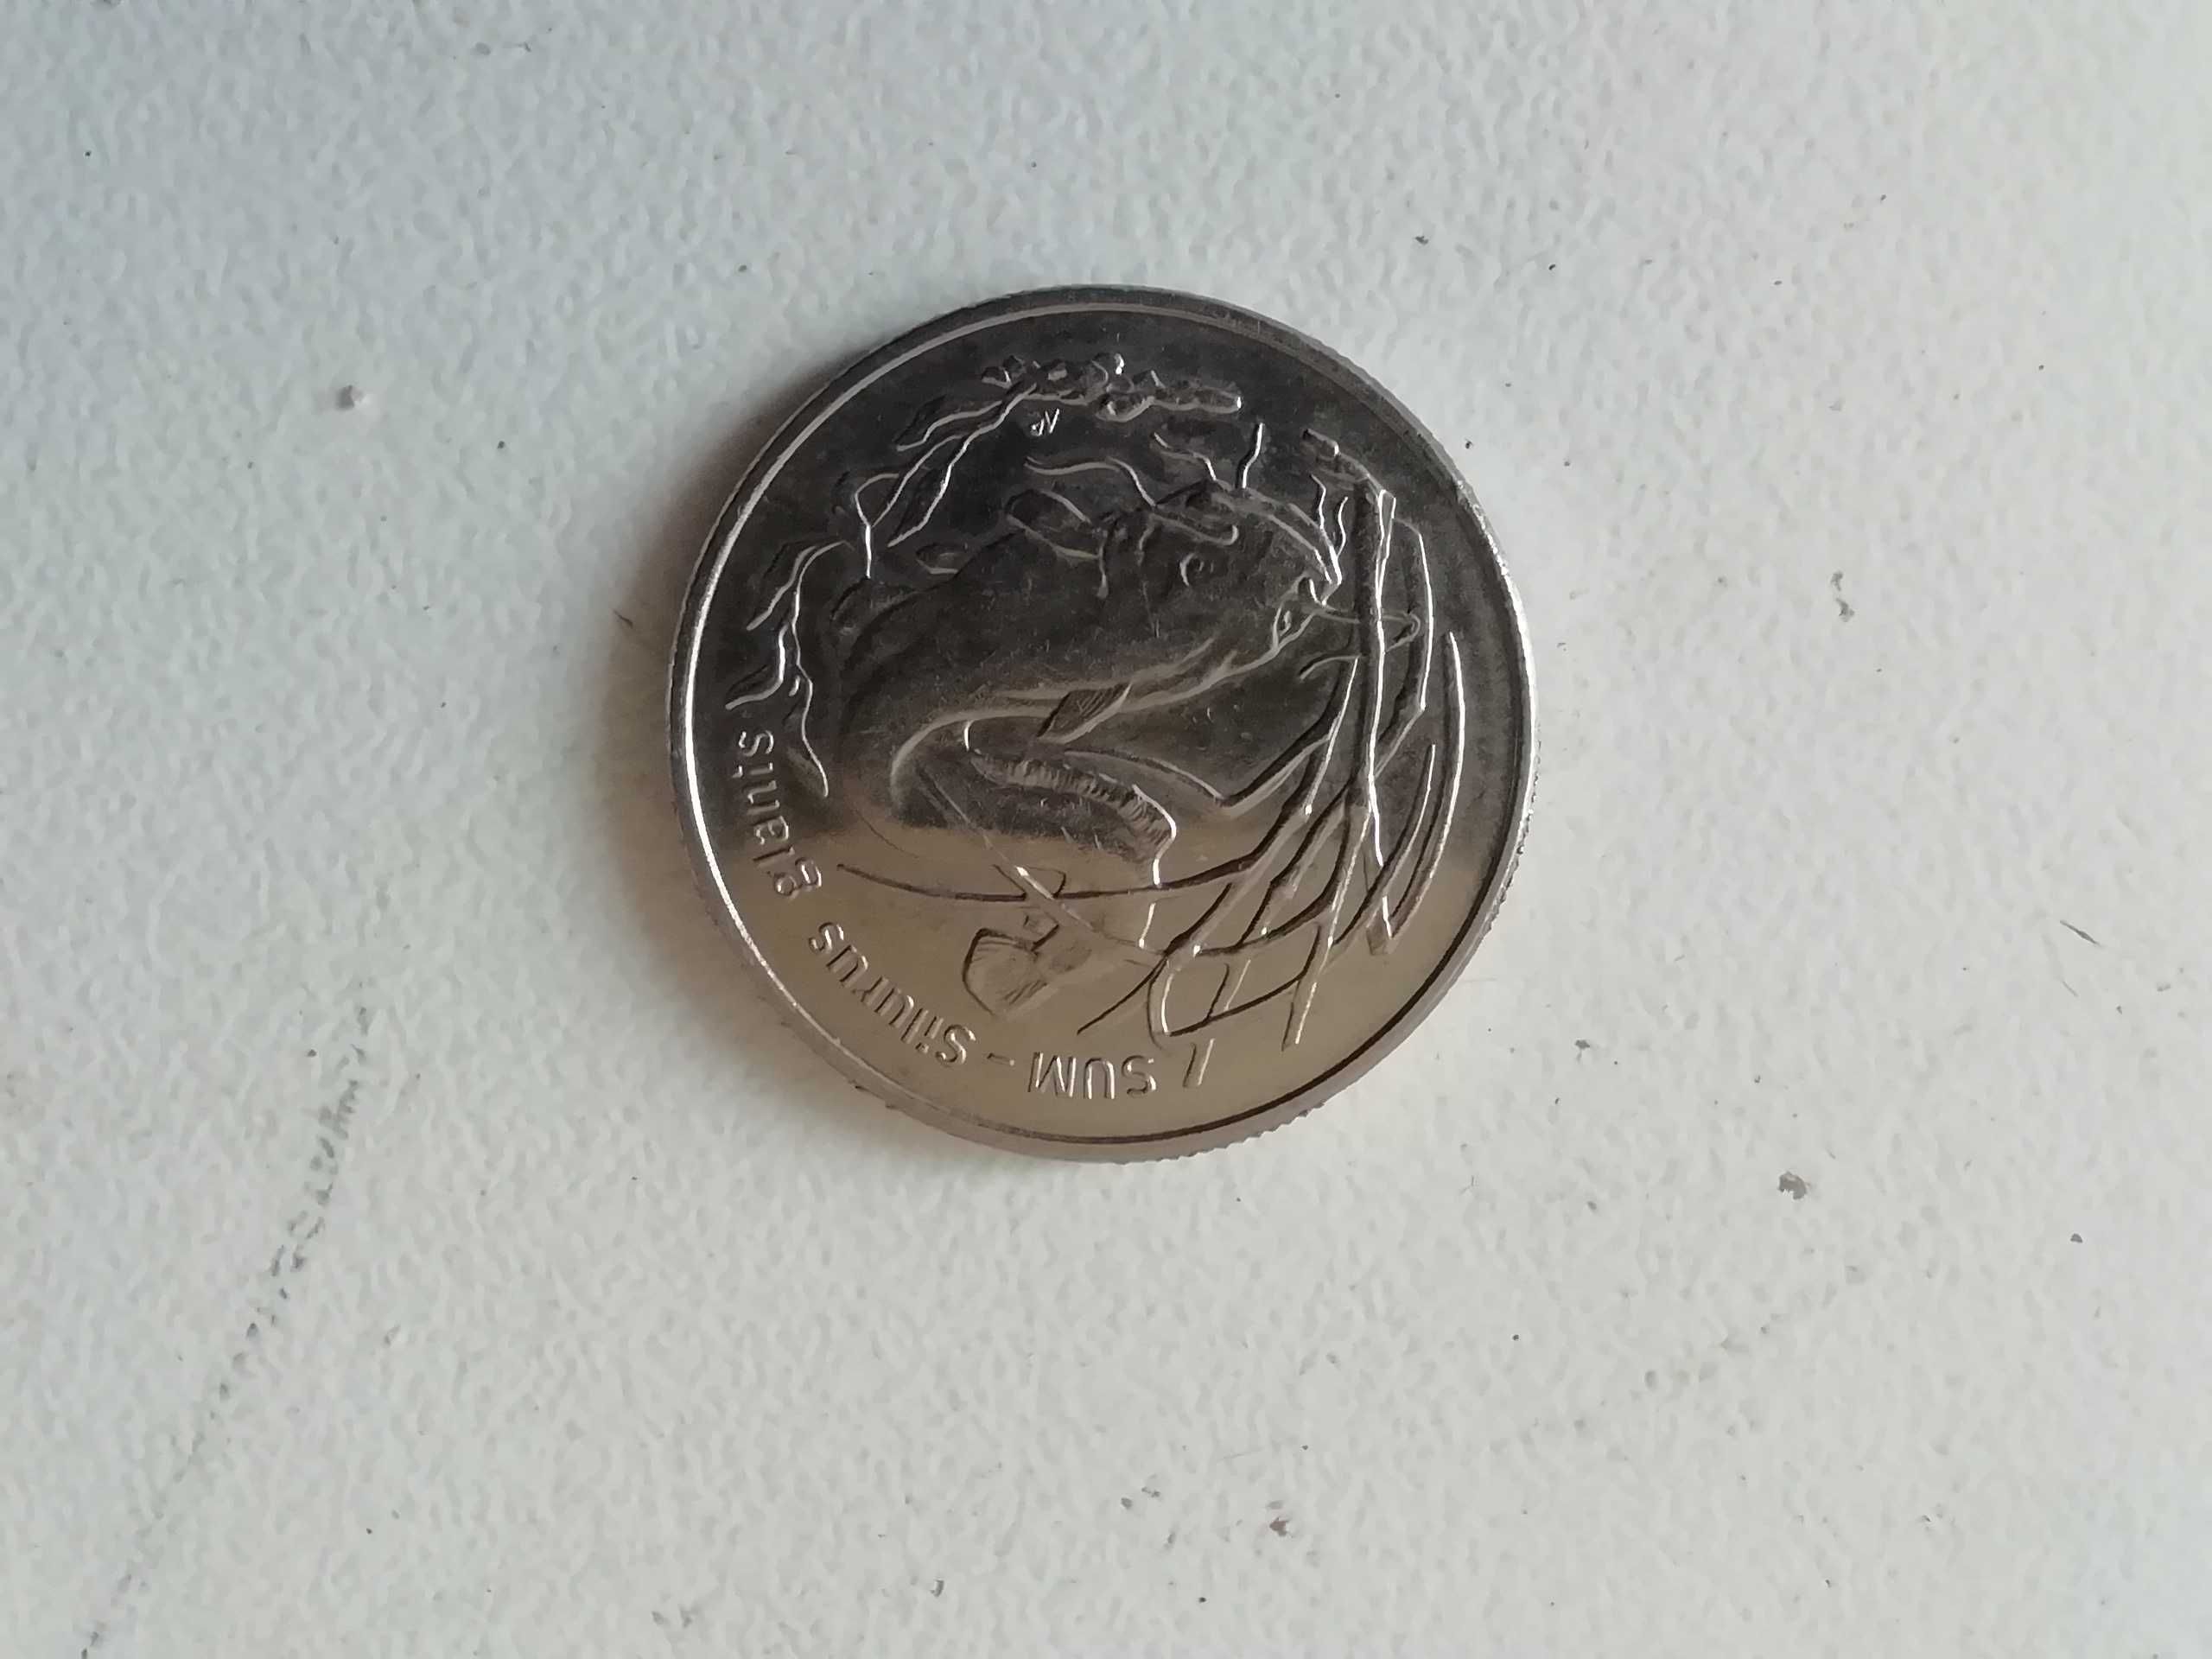 Moneta 2 zł. Polska z 1995 r. Sum stan dobry